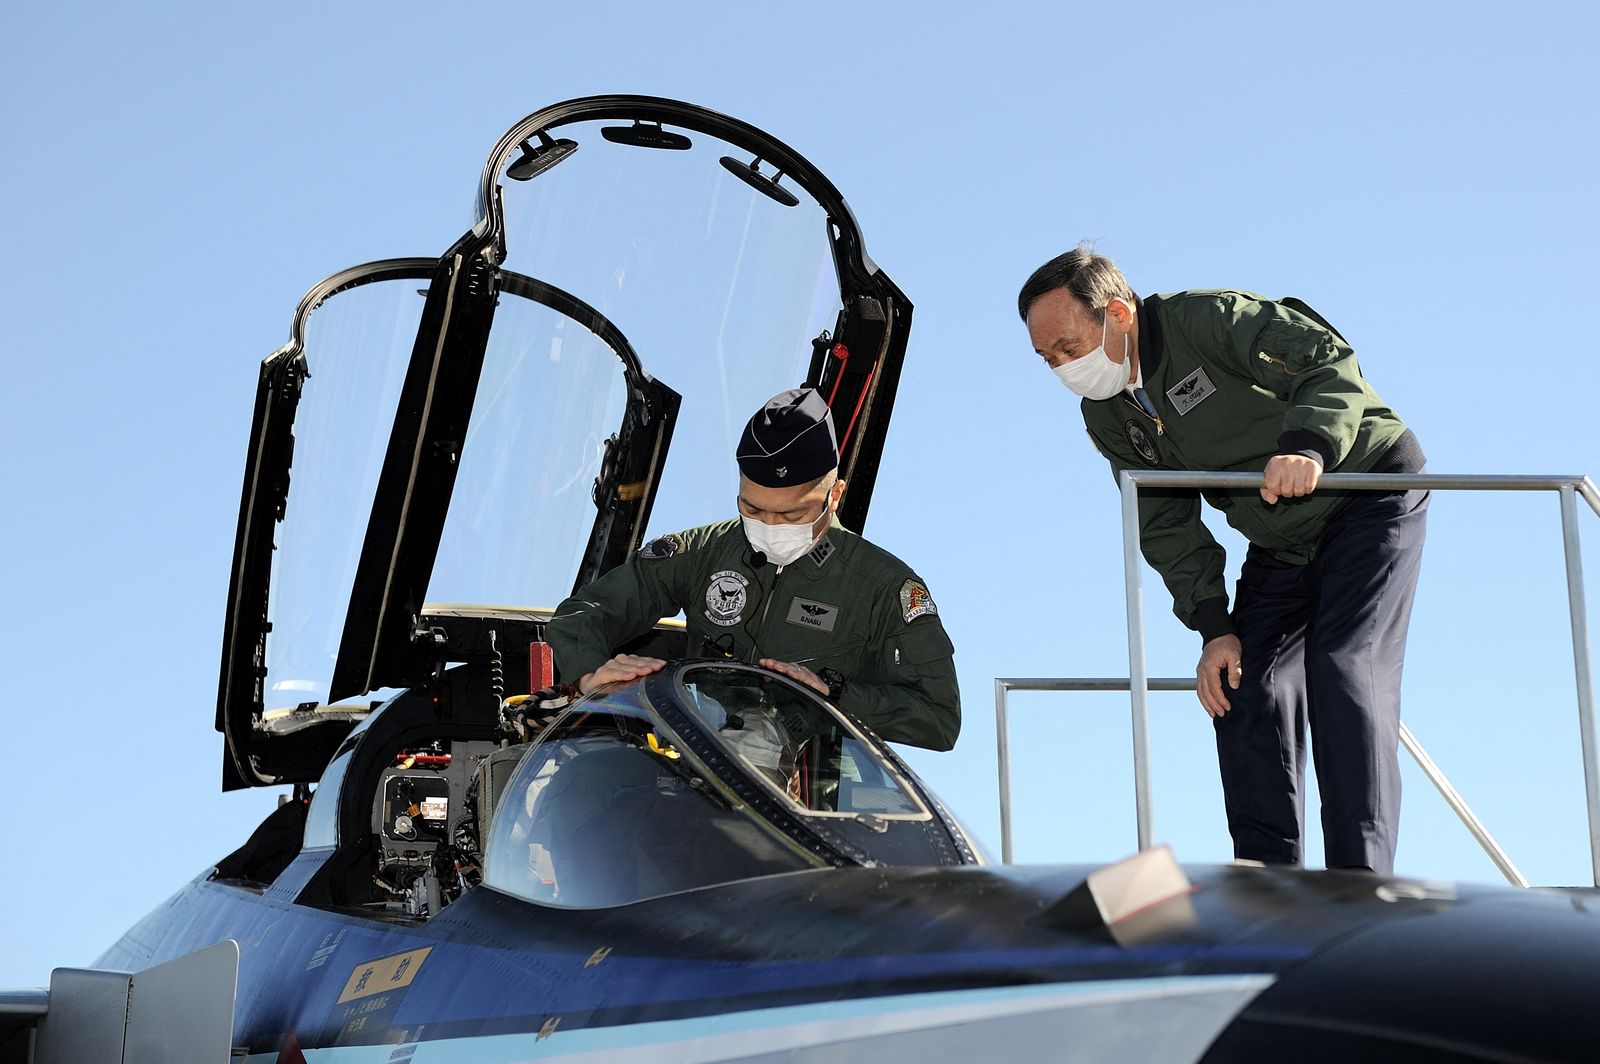 رئيس الوزراء الياباني السابق يوشيهيدي سوجا (يمين) ينظر داخل قمرة القيادة لطائرة مقاتلة من طراز (F4EJ Kai) تابعة لقوات الدفاع الذاتي الجوية اليابانية في قاعدة إيروما الجوية بمحافظة سايتاما، 28 نوفمبر 2020 - AFP